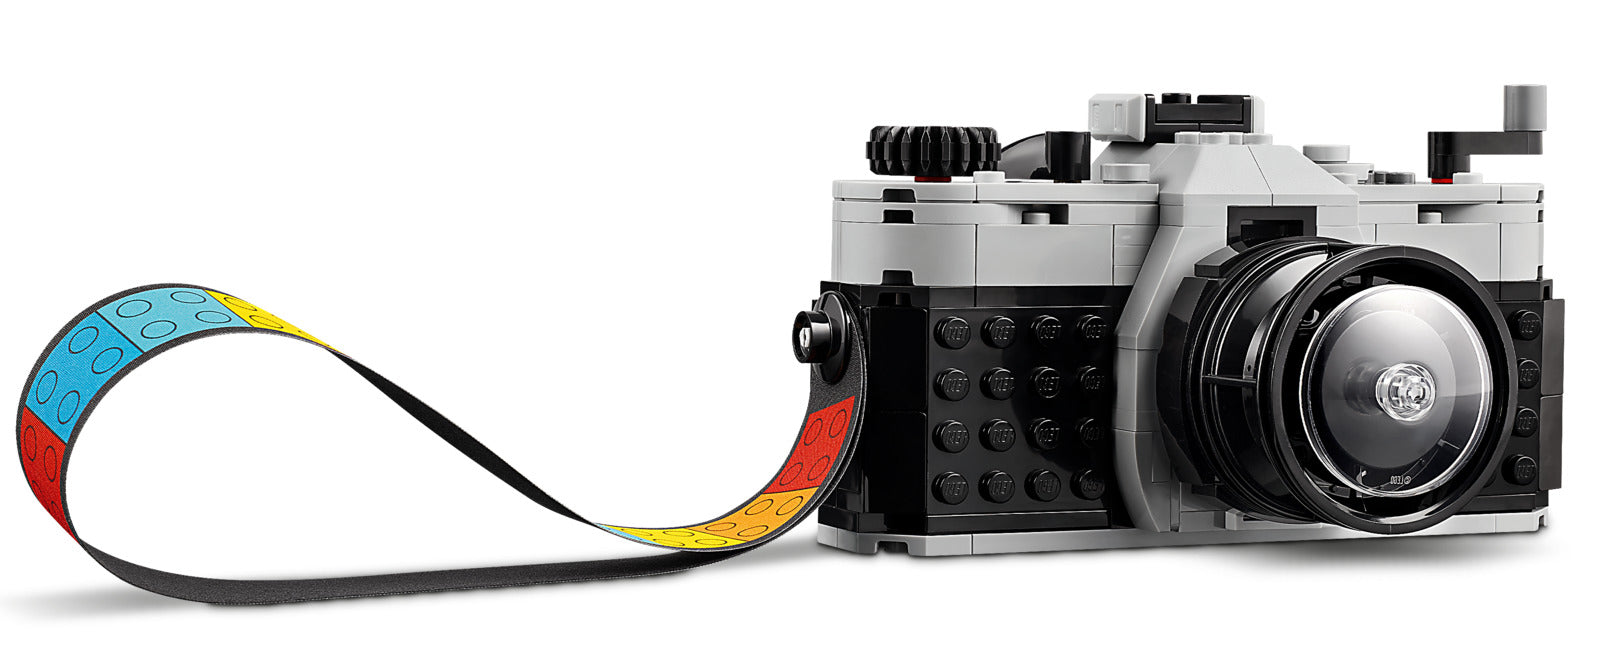 LEGO Creator: 3-In-1 - Retro Camera (31147)